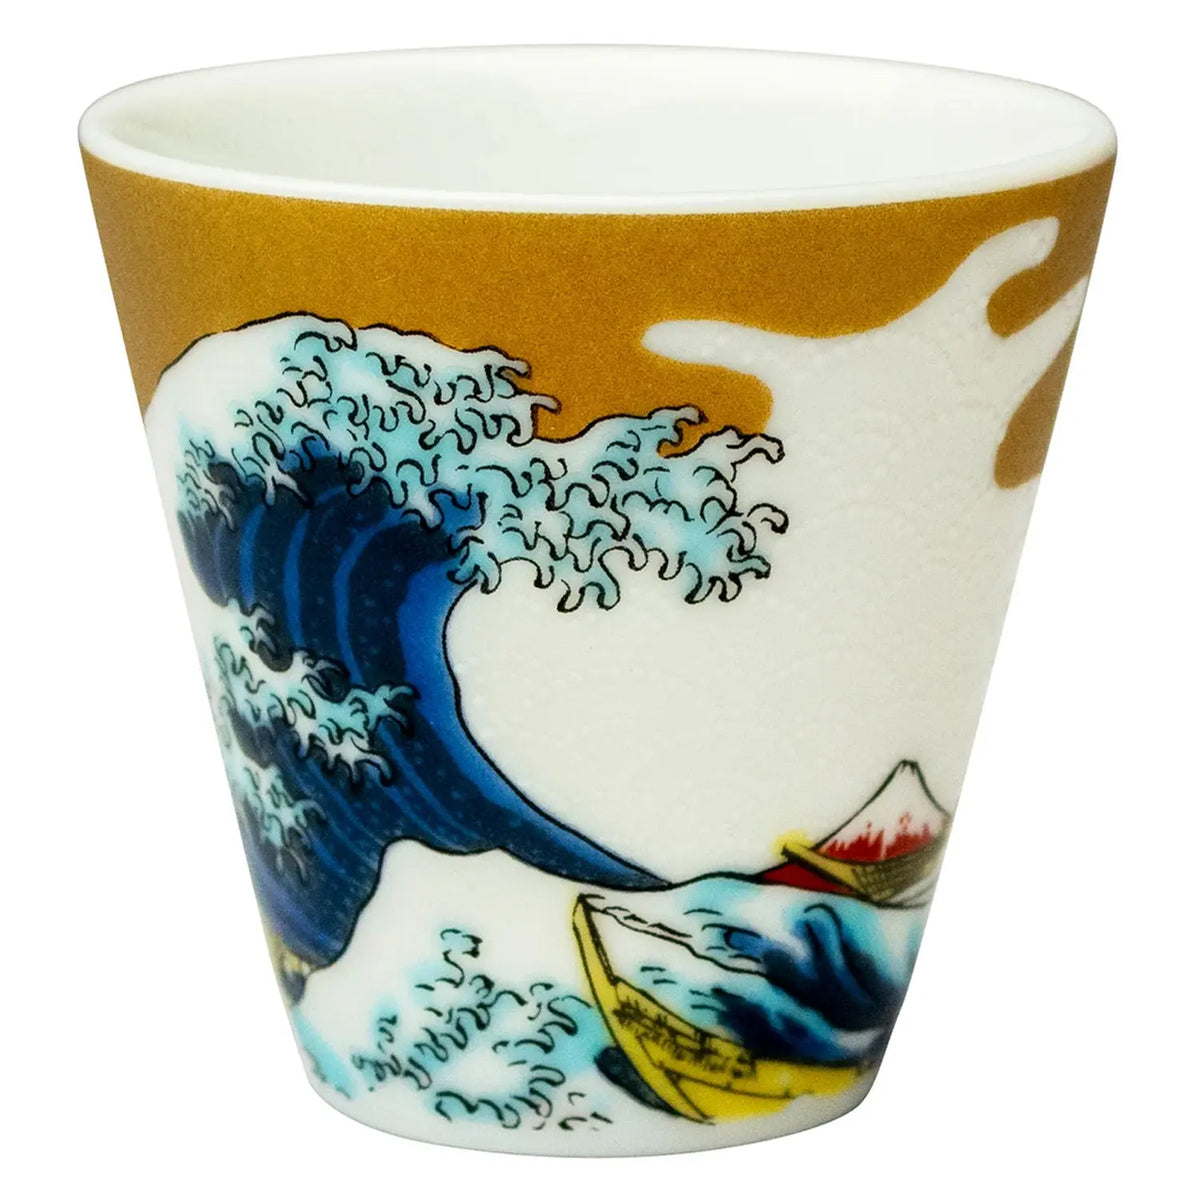 SEIKOU KISSYO Kutani Porcelain Soba Choko Cup Nami